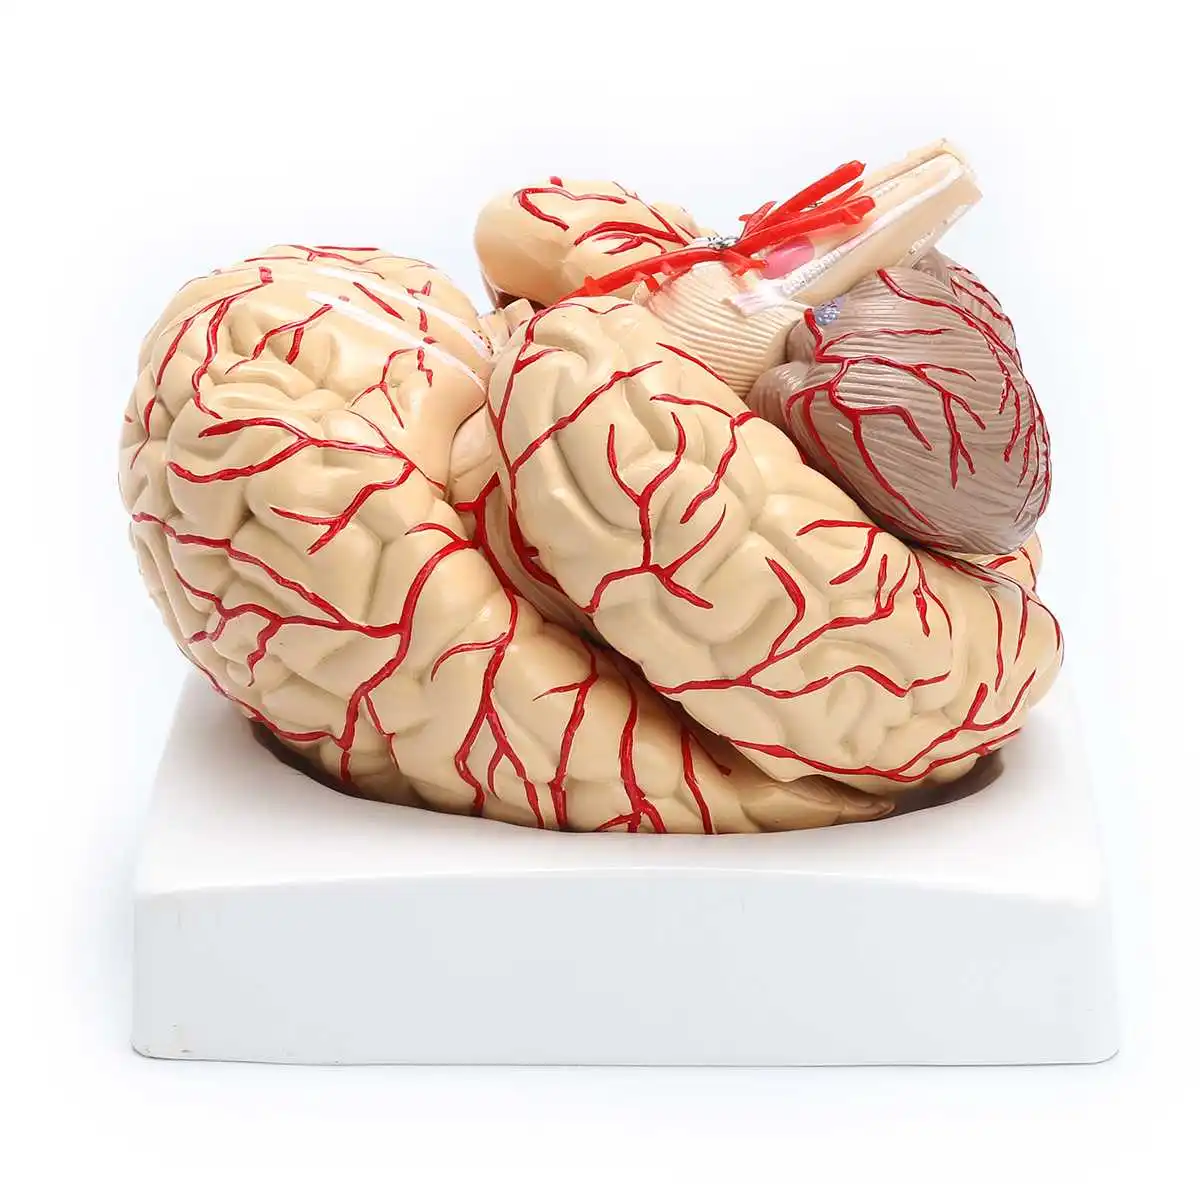 1:1 модель в натуральную величину с артериями анатомический медицинский орган, анатомия модель школы образовательная медицинская наука обучение биологии